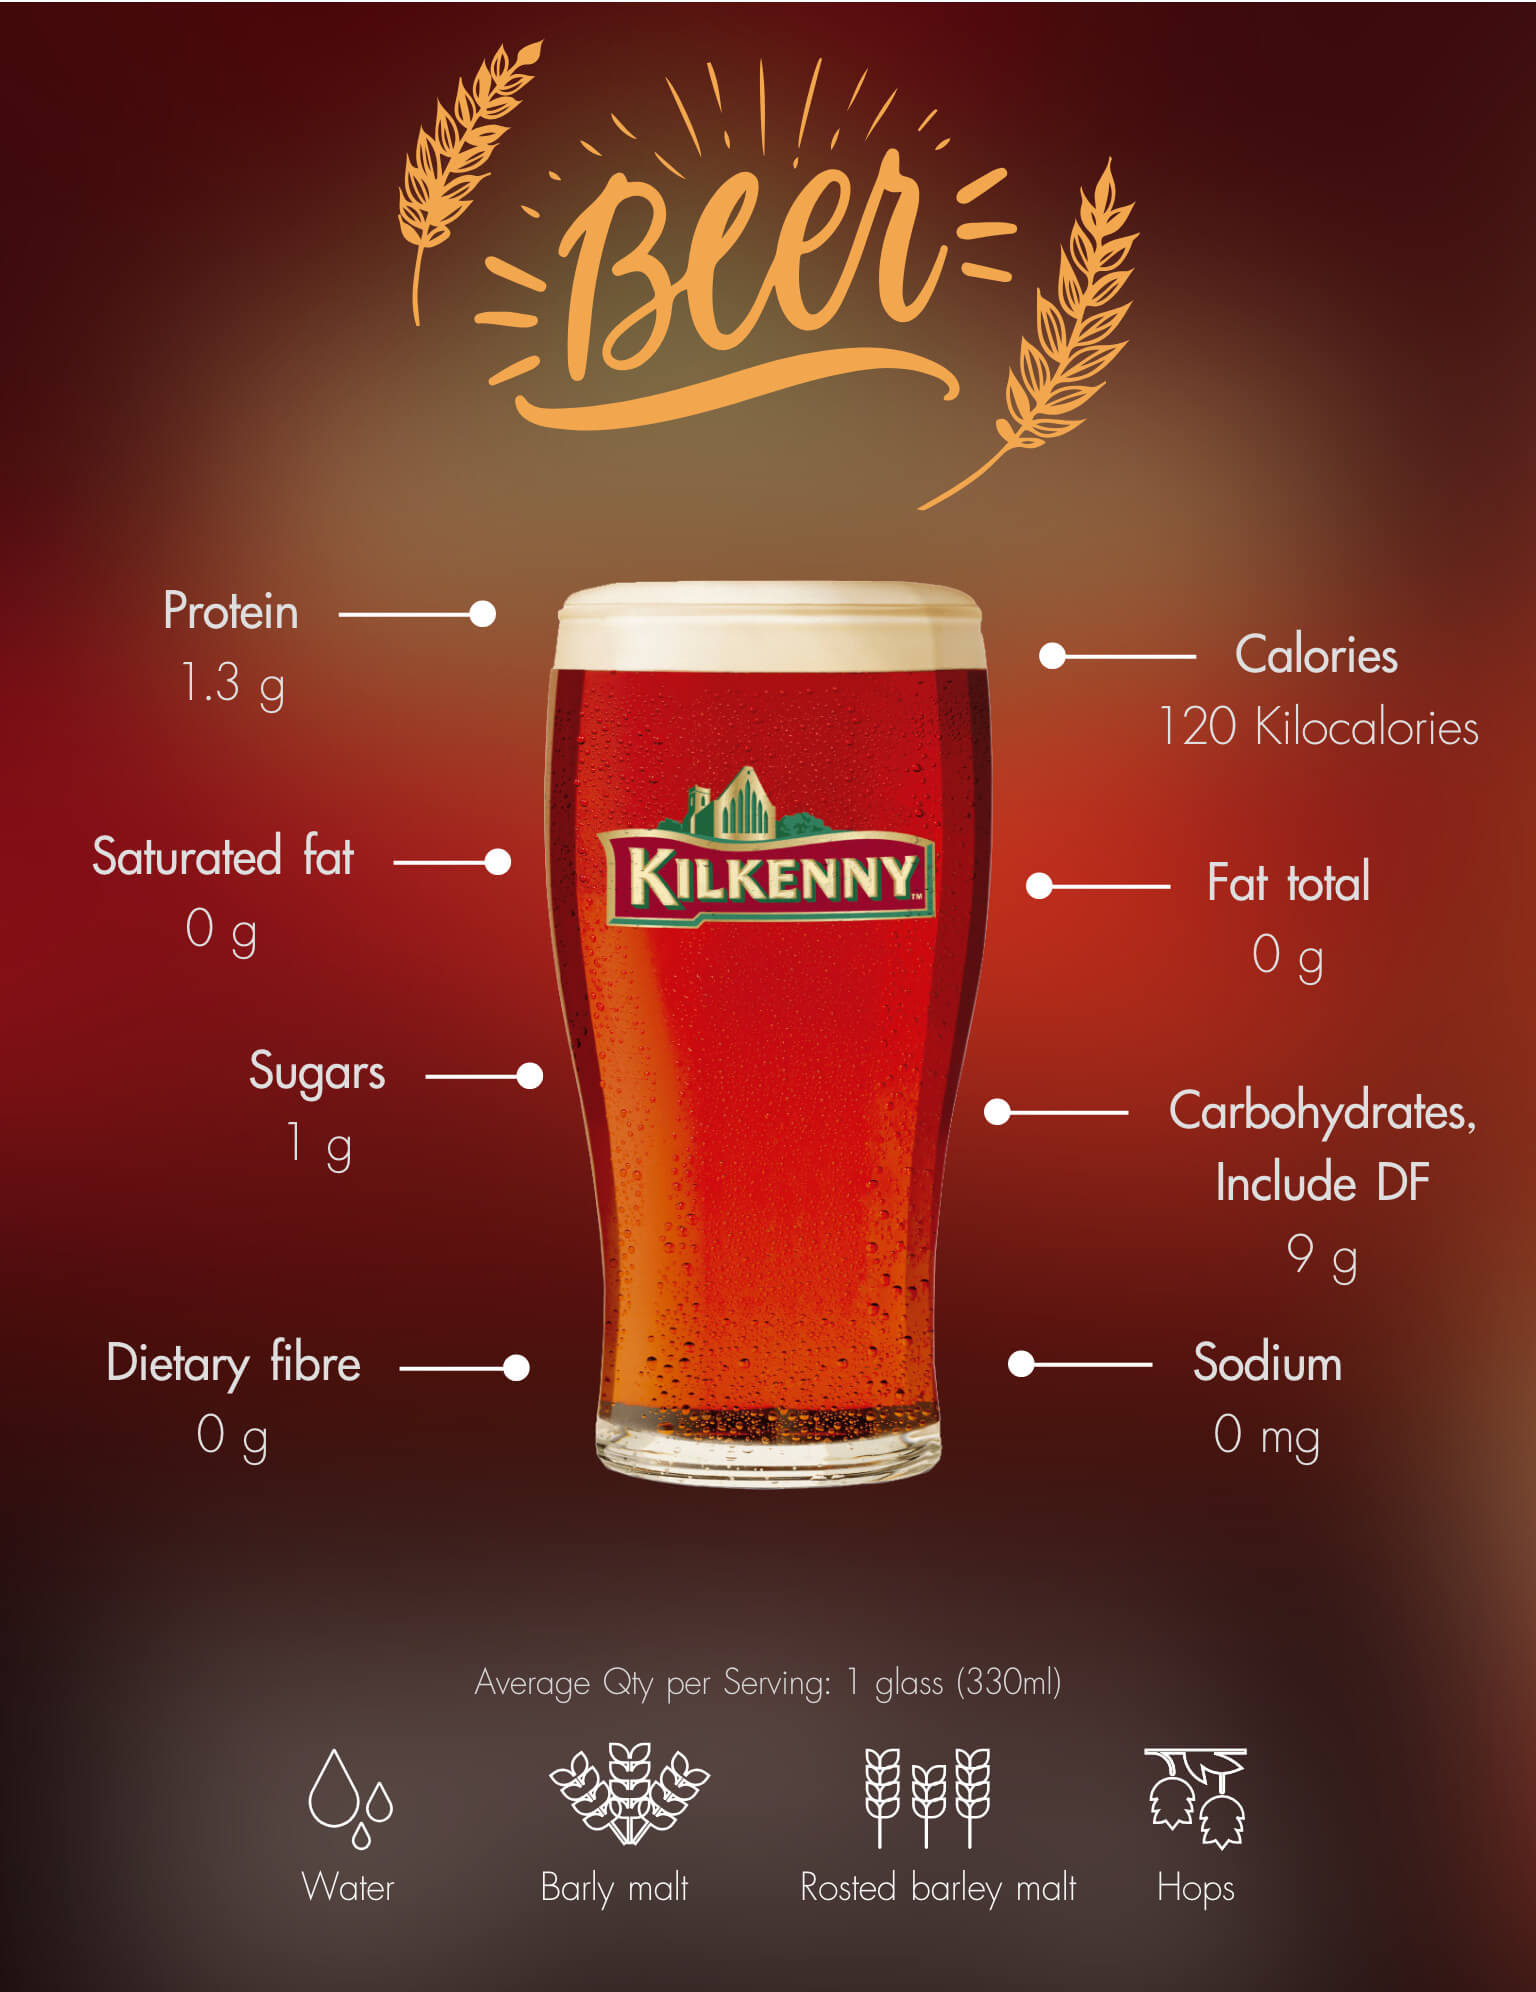 Kilkenny Beer Information